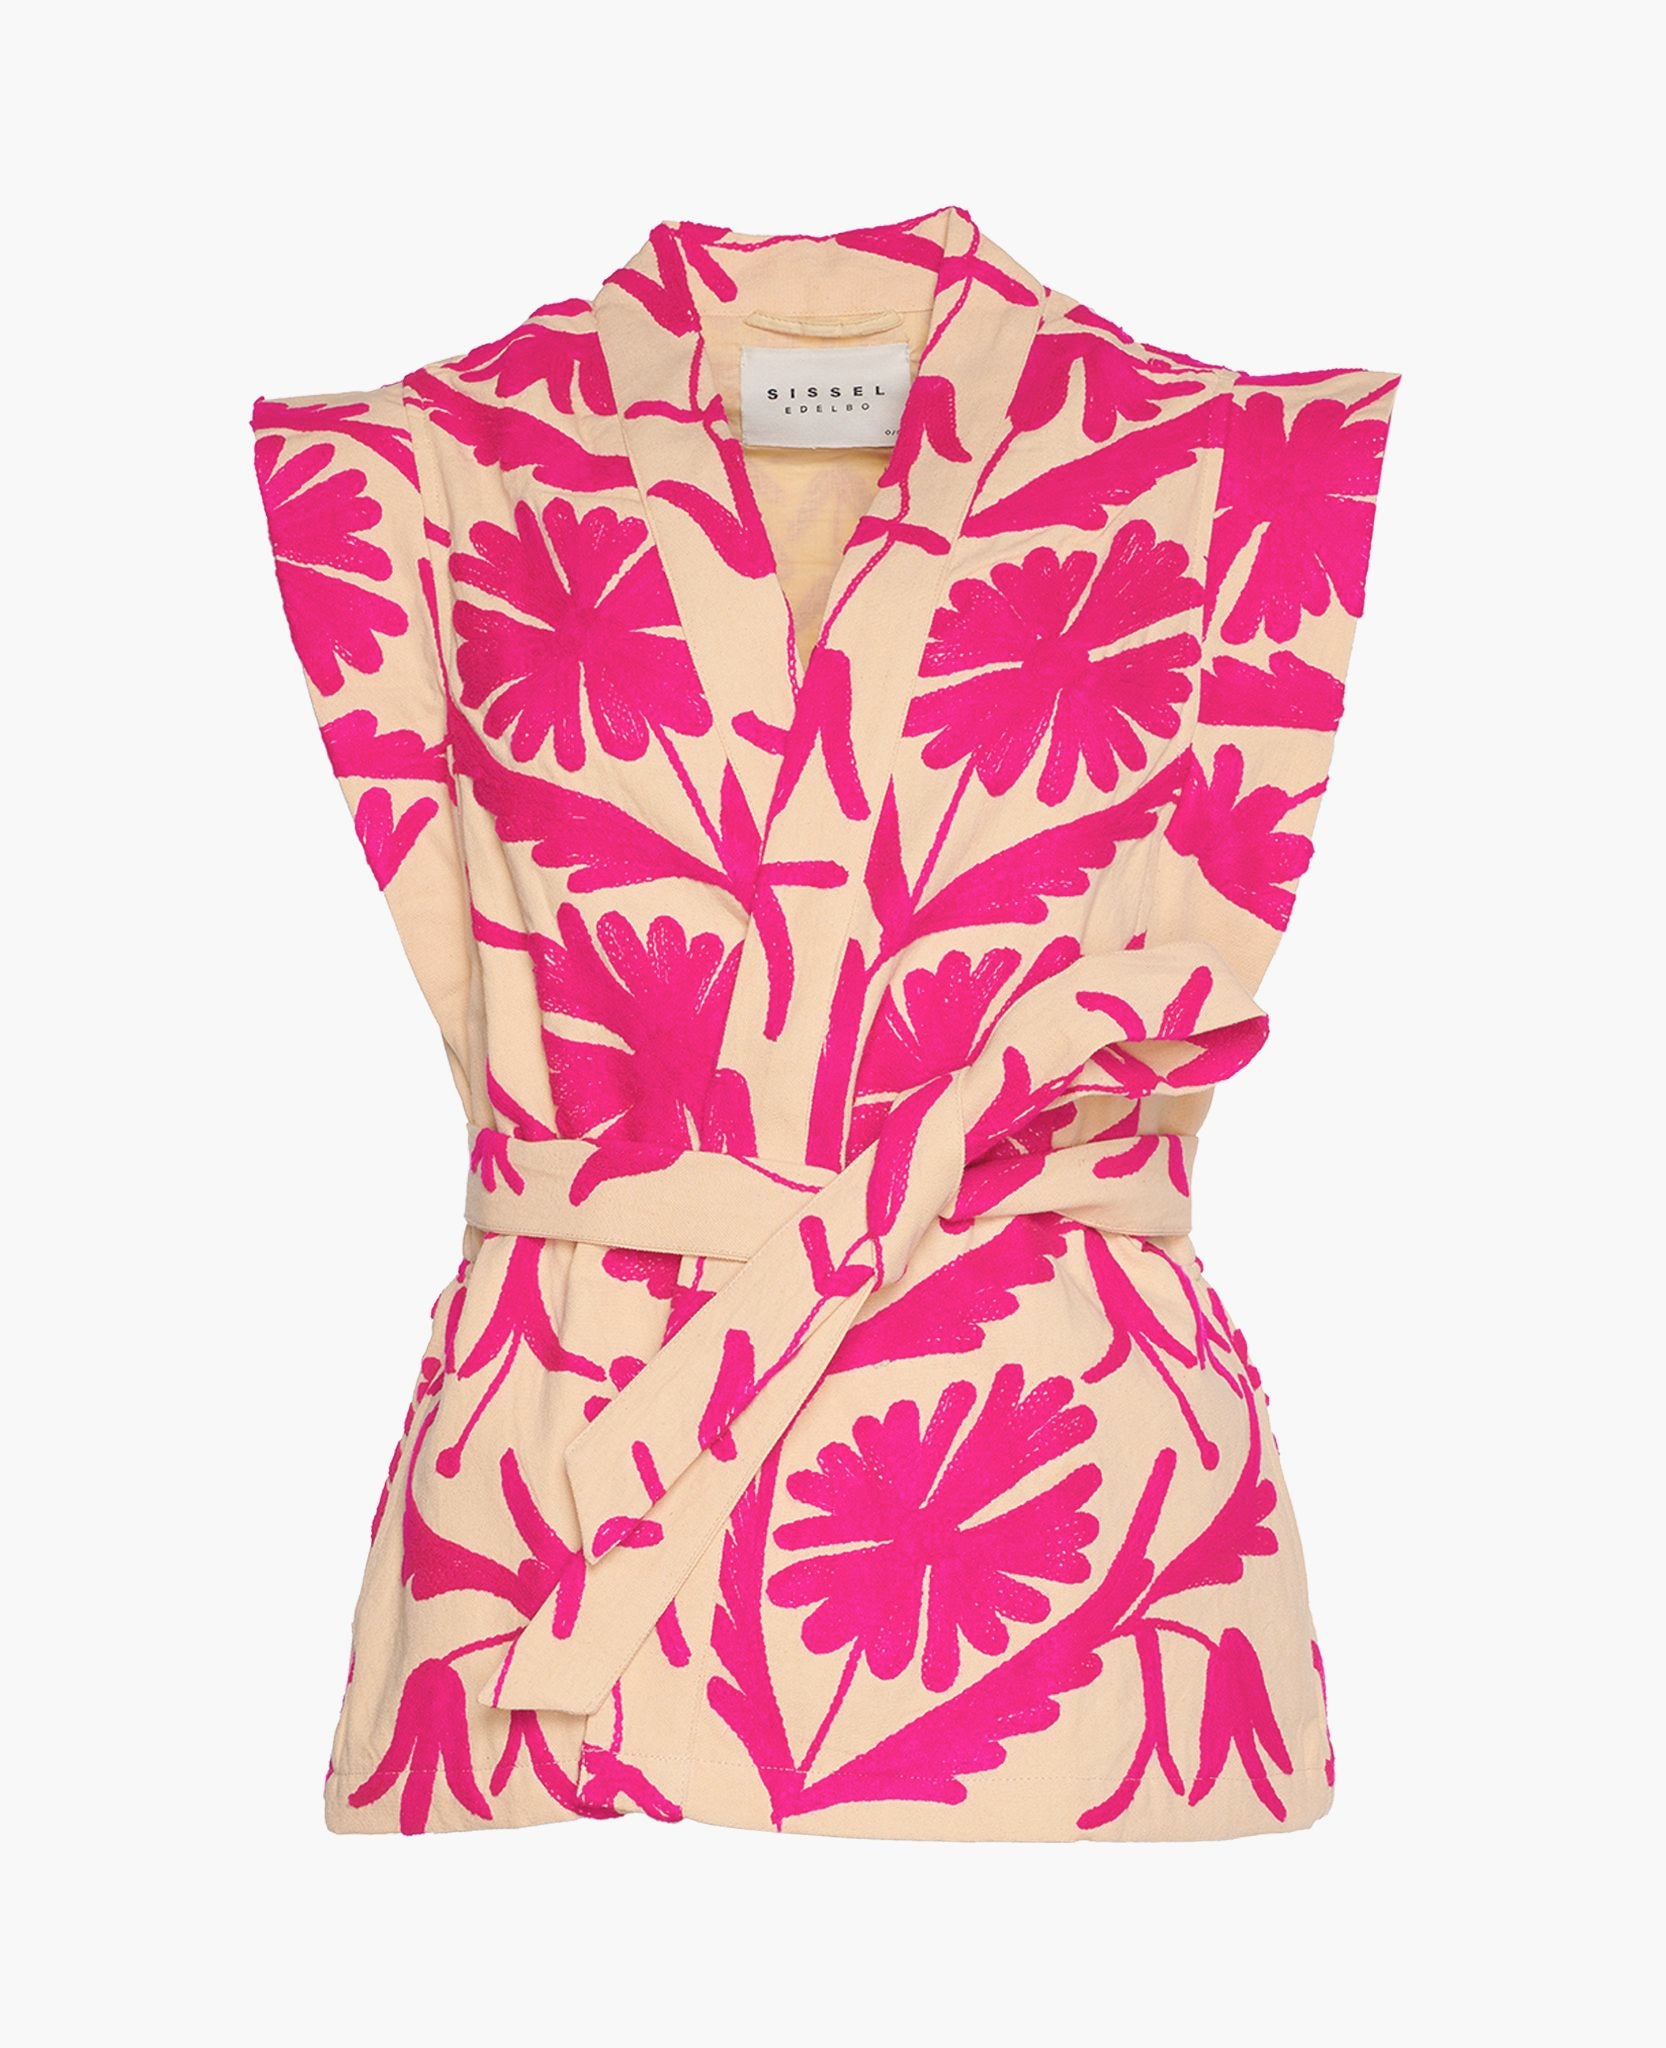 Full length: 66 cm Chest: 100 cmSissel Edelbo Elsa Suzani Vest, hot pink